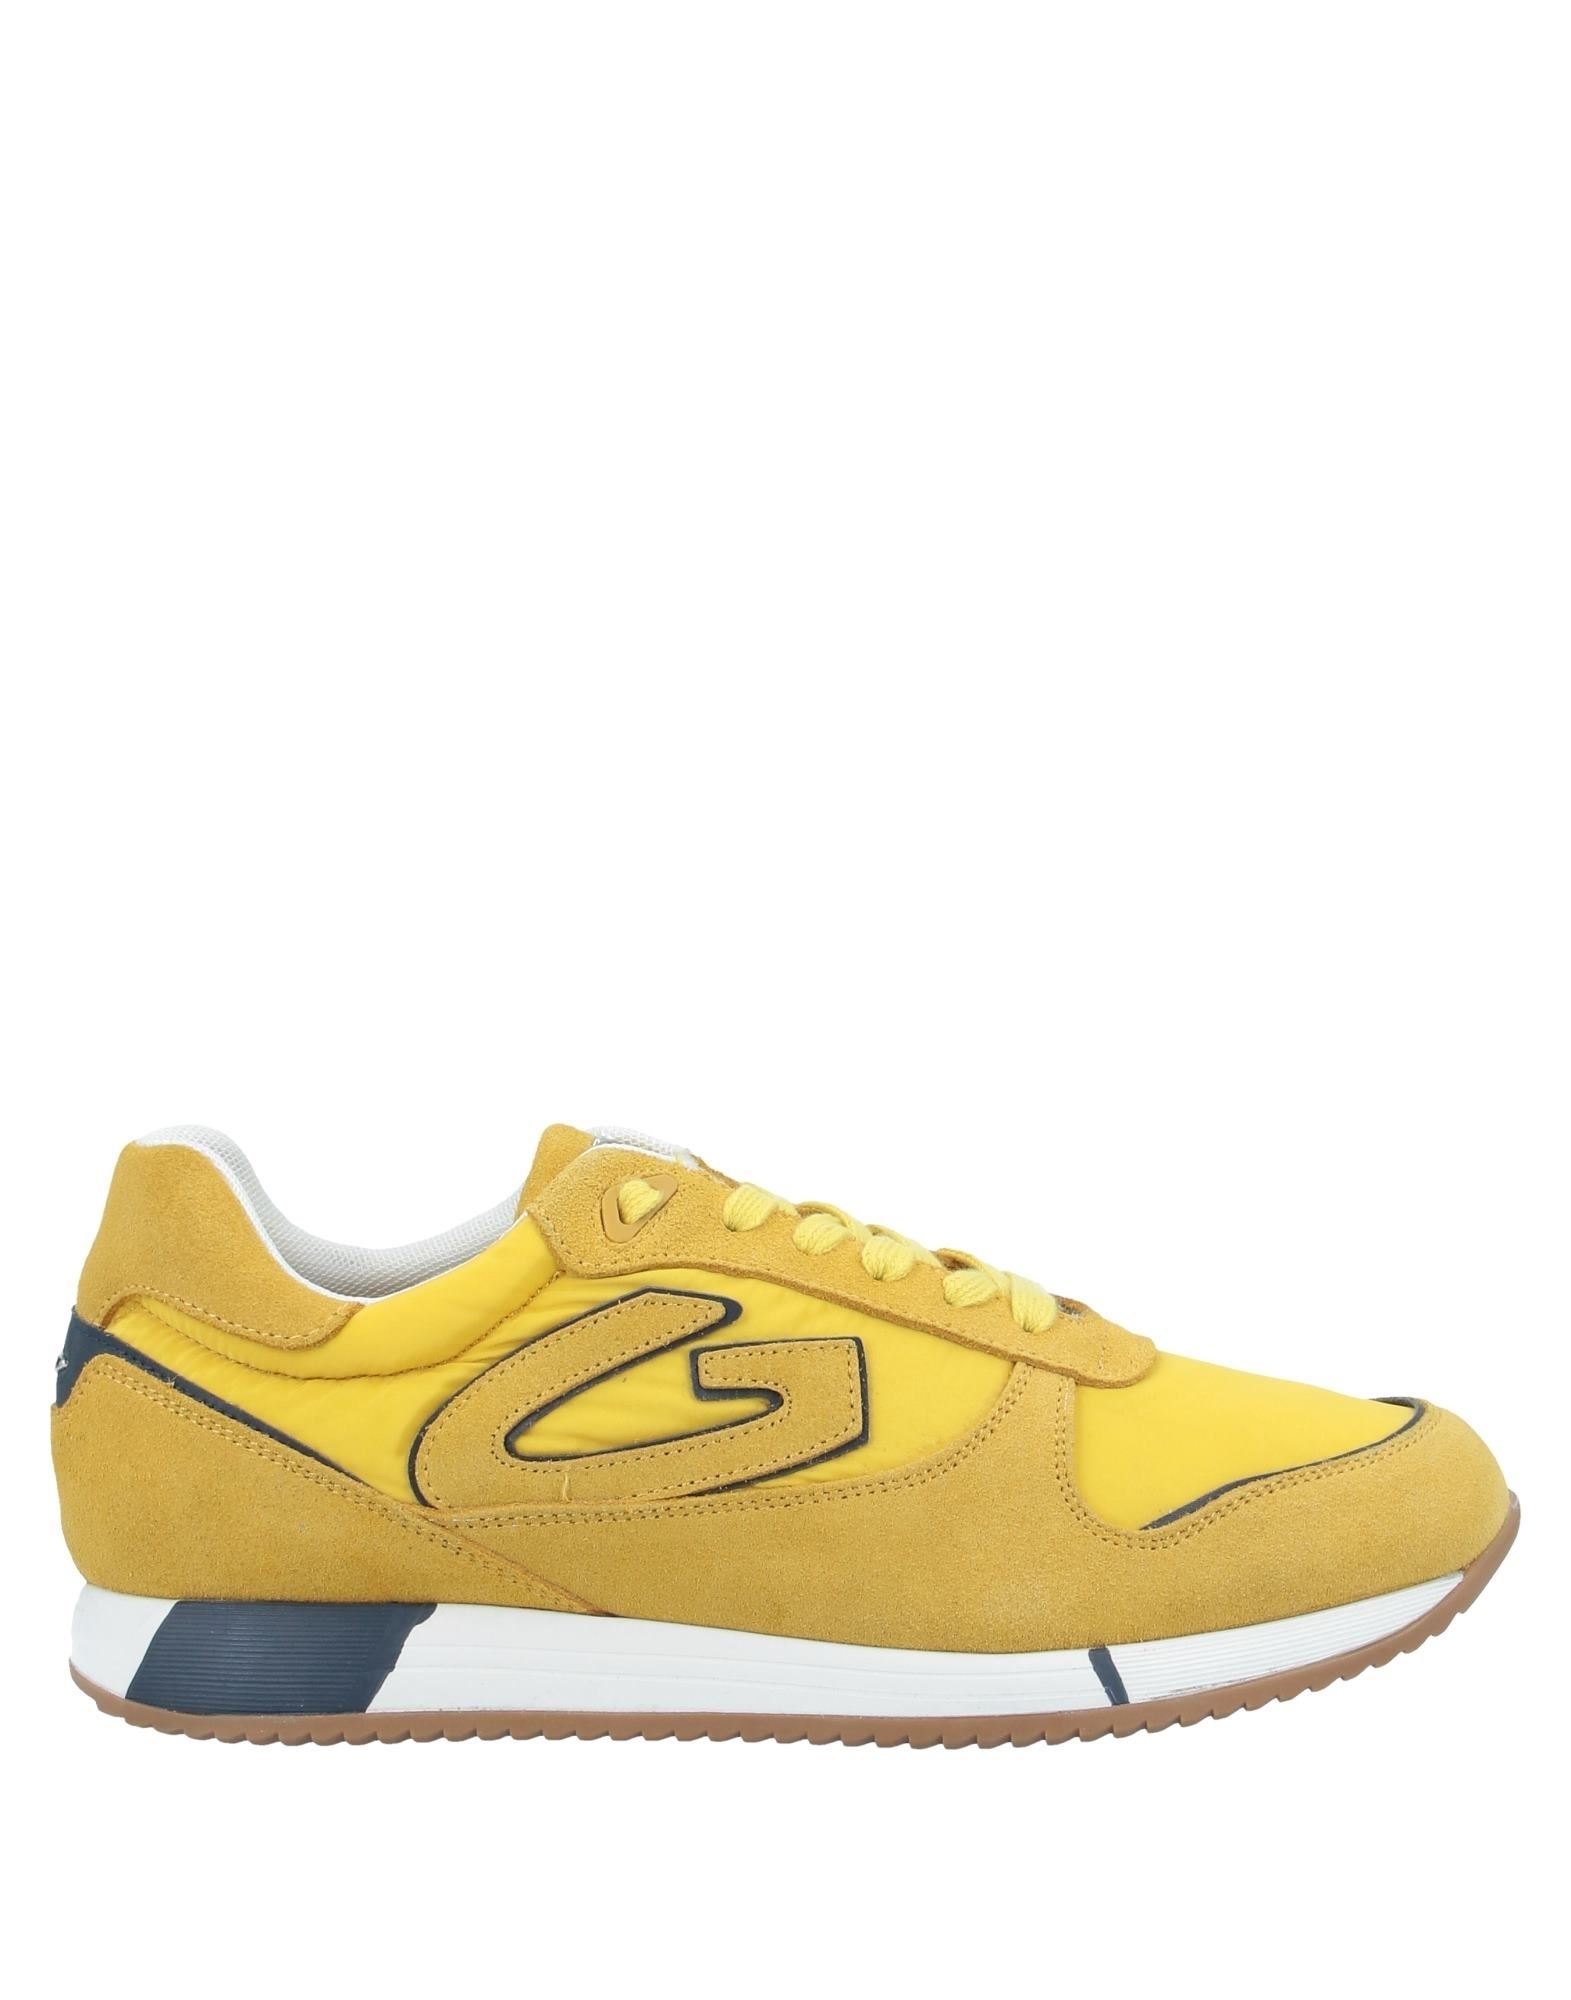 ふるさと納税 アルベルト Gold Sneakers レディース シューズ スニーカー ガルディアーニ スニーカー サイズ:39_EU